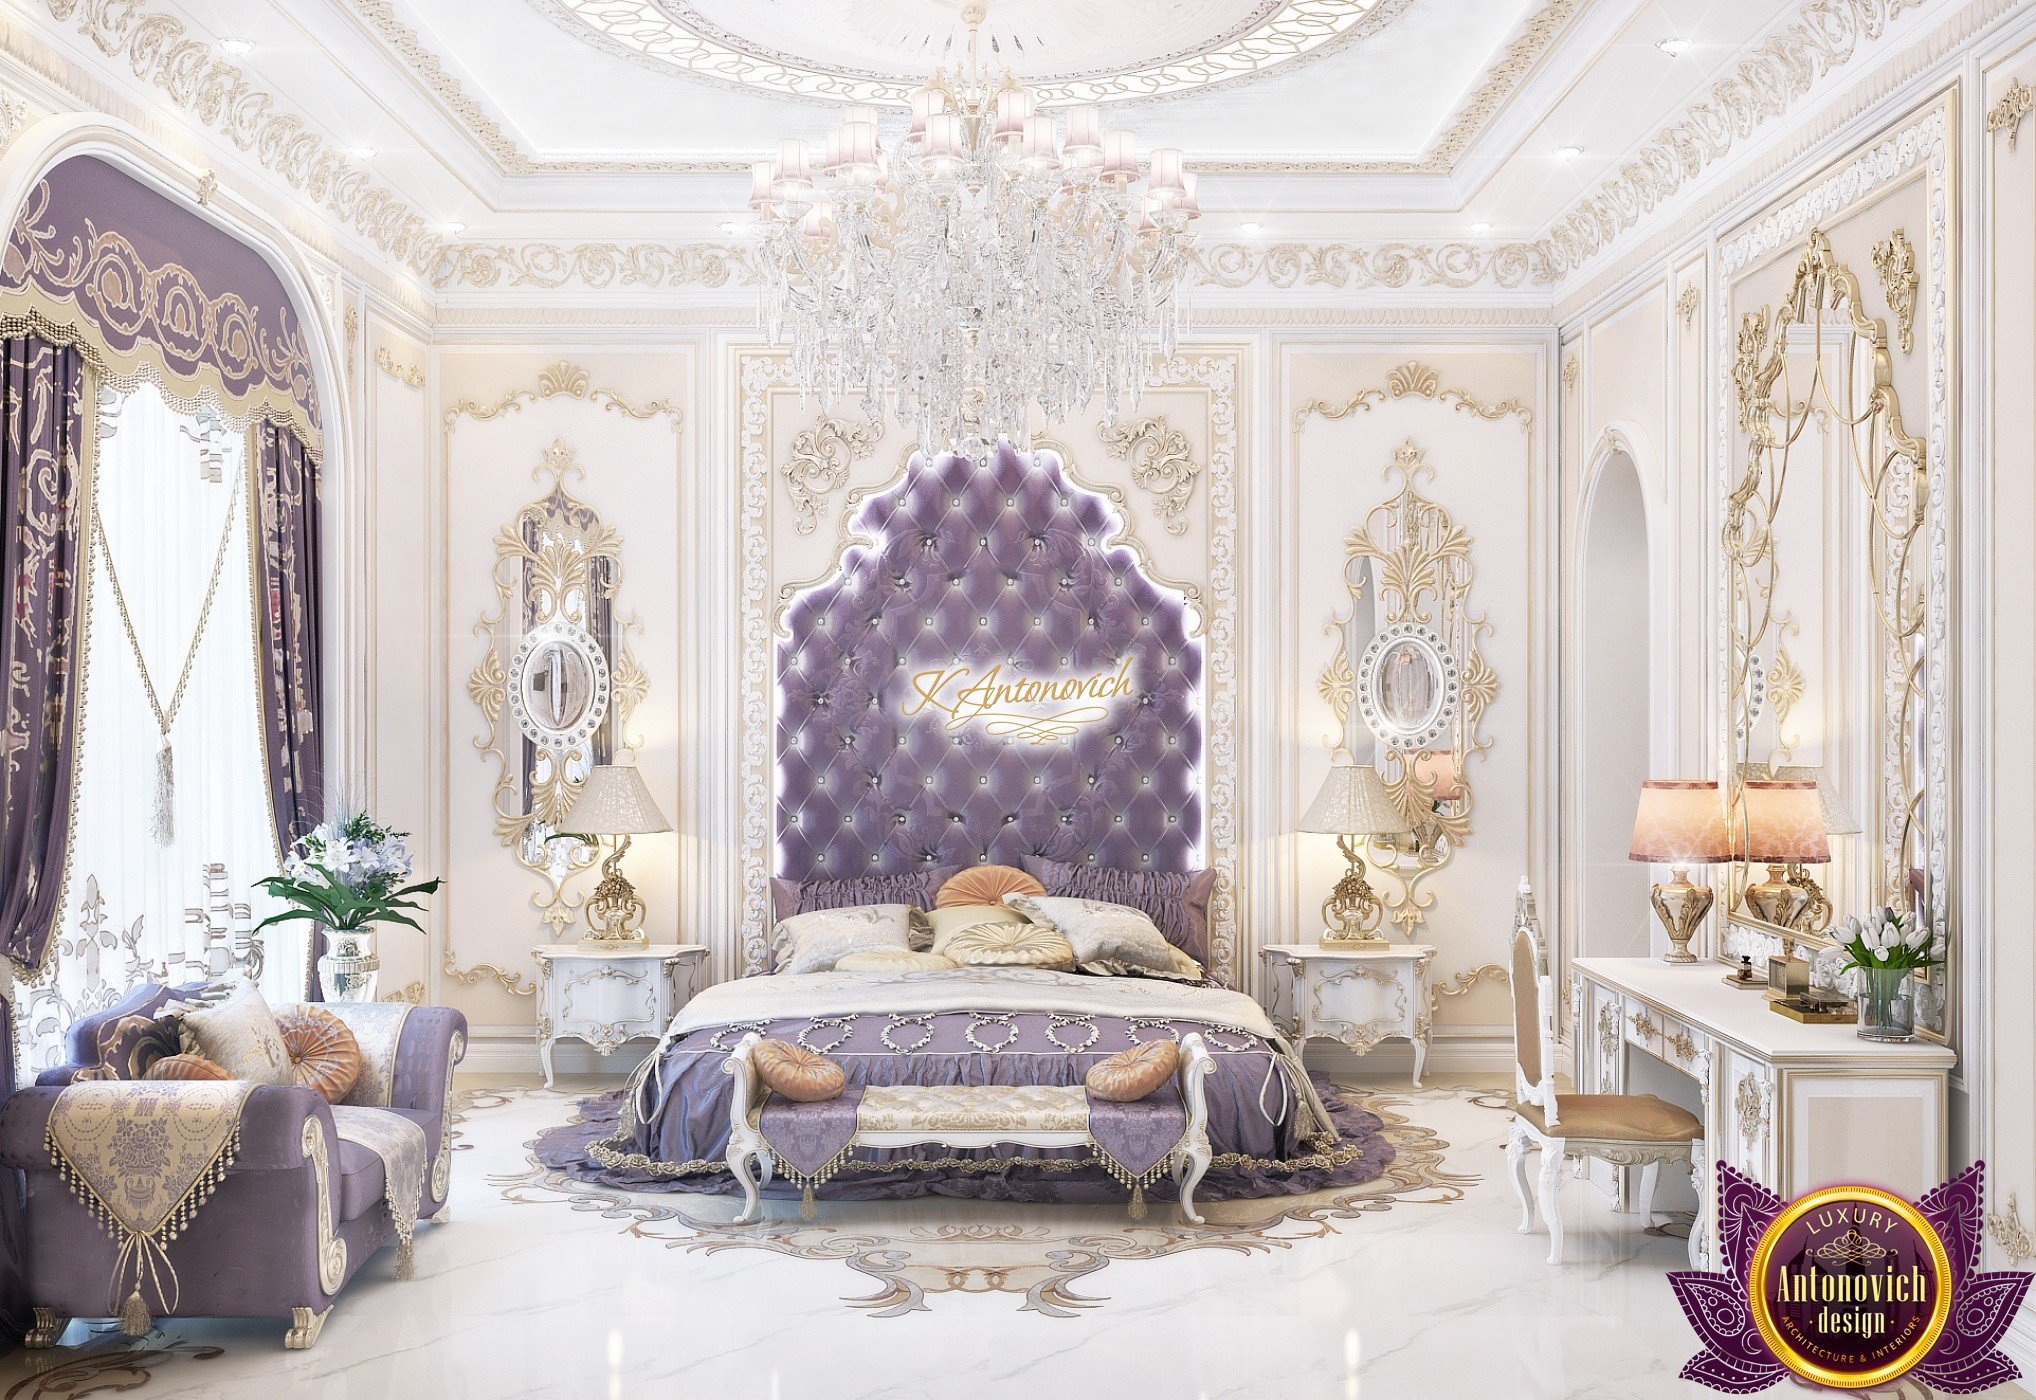 Luxury New Arabic Style Bedroom Design